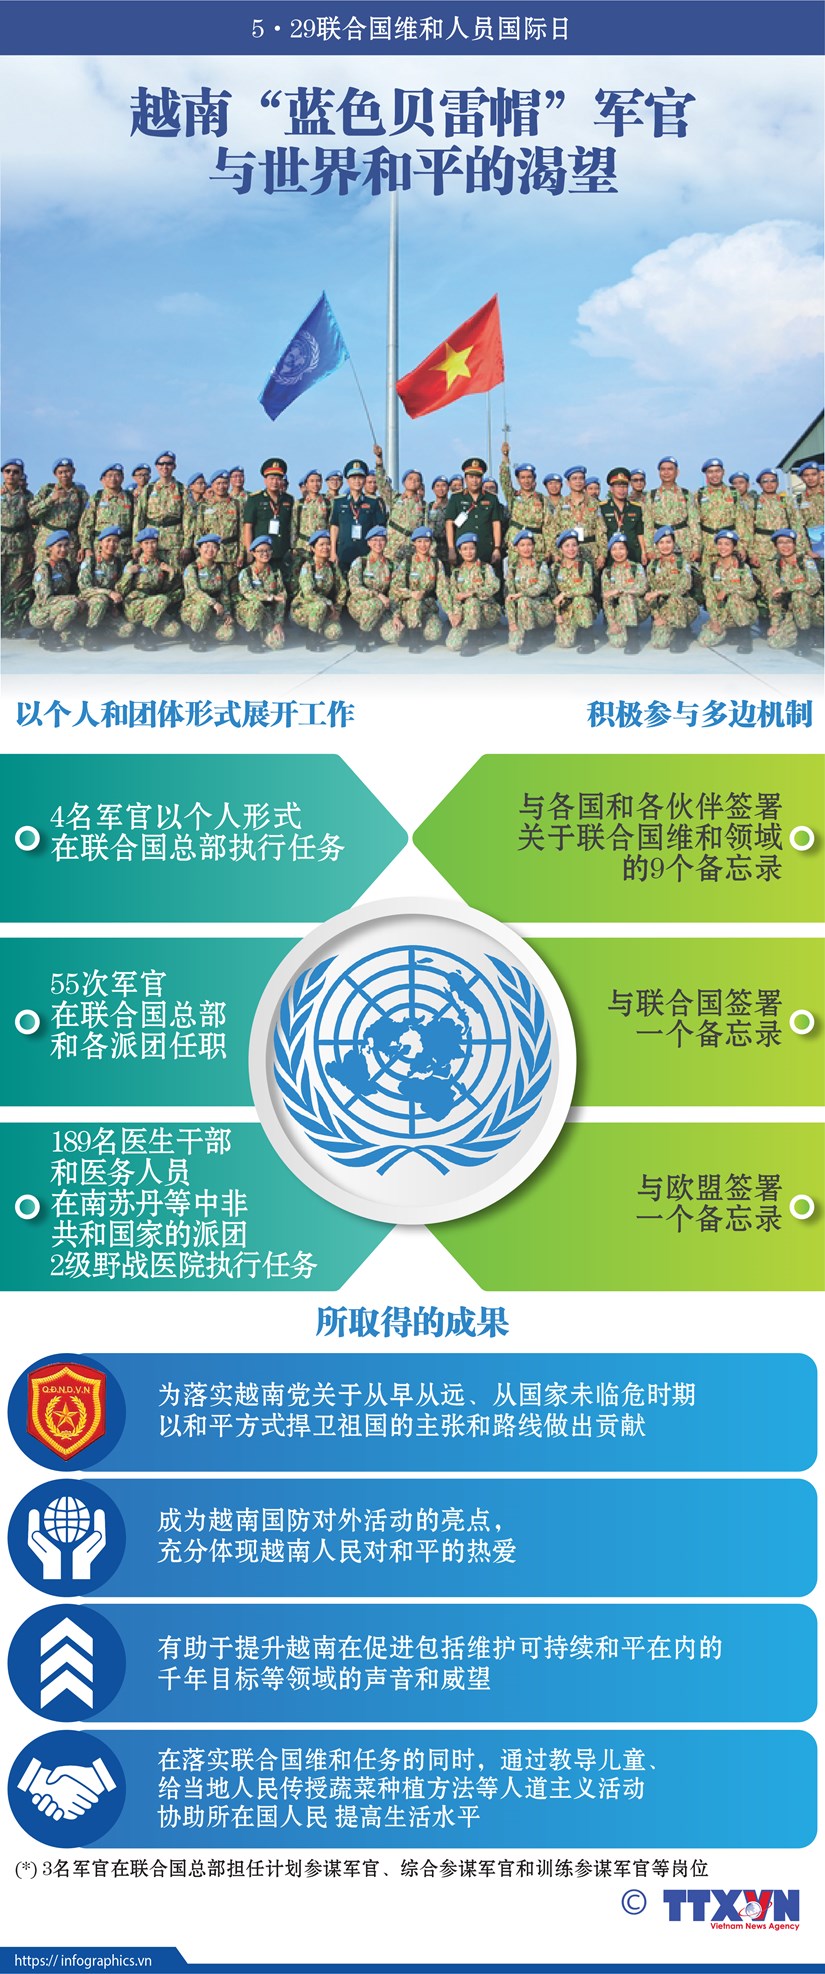 图表新闻：越南“蓝色贝雷帽”军官与世界和平的渴望 hinh anh 1